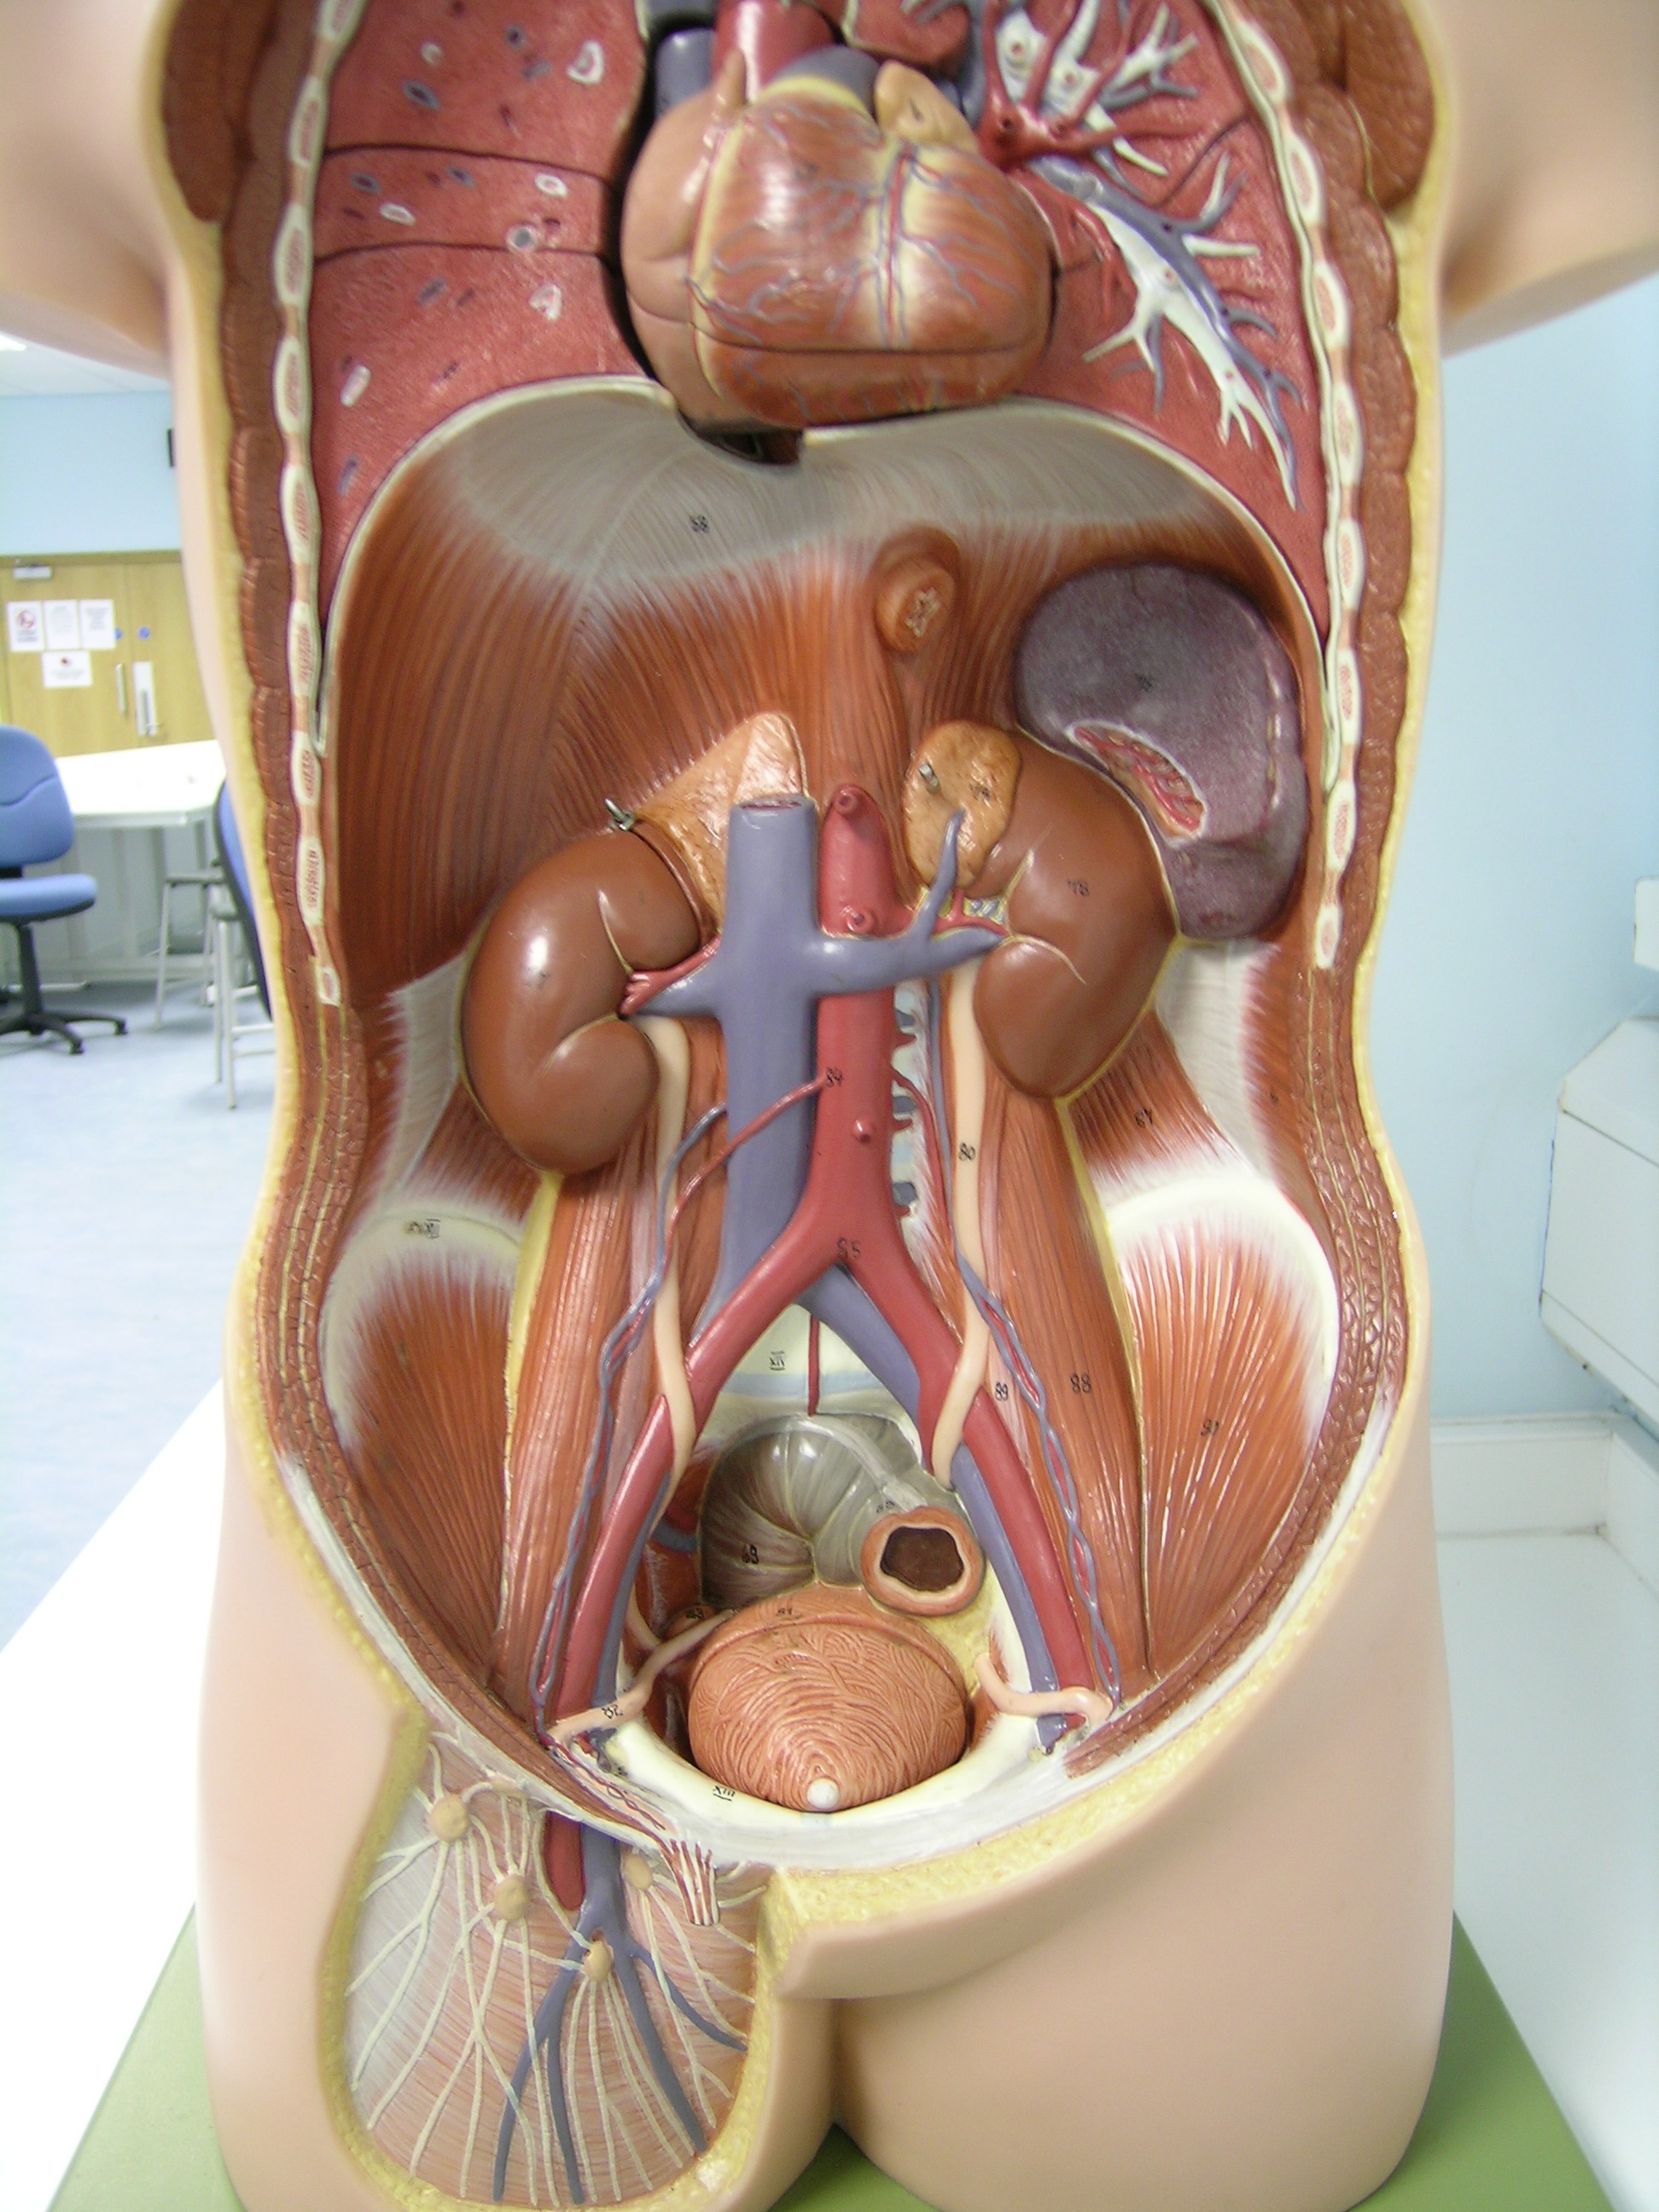 анатомия фото внутренние органы мужчины